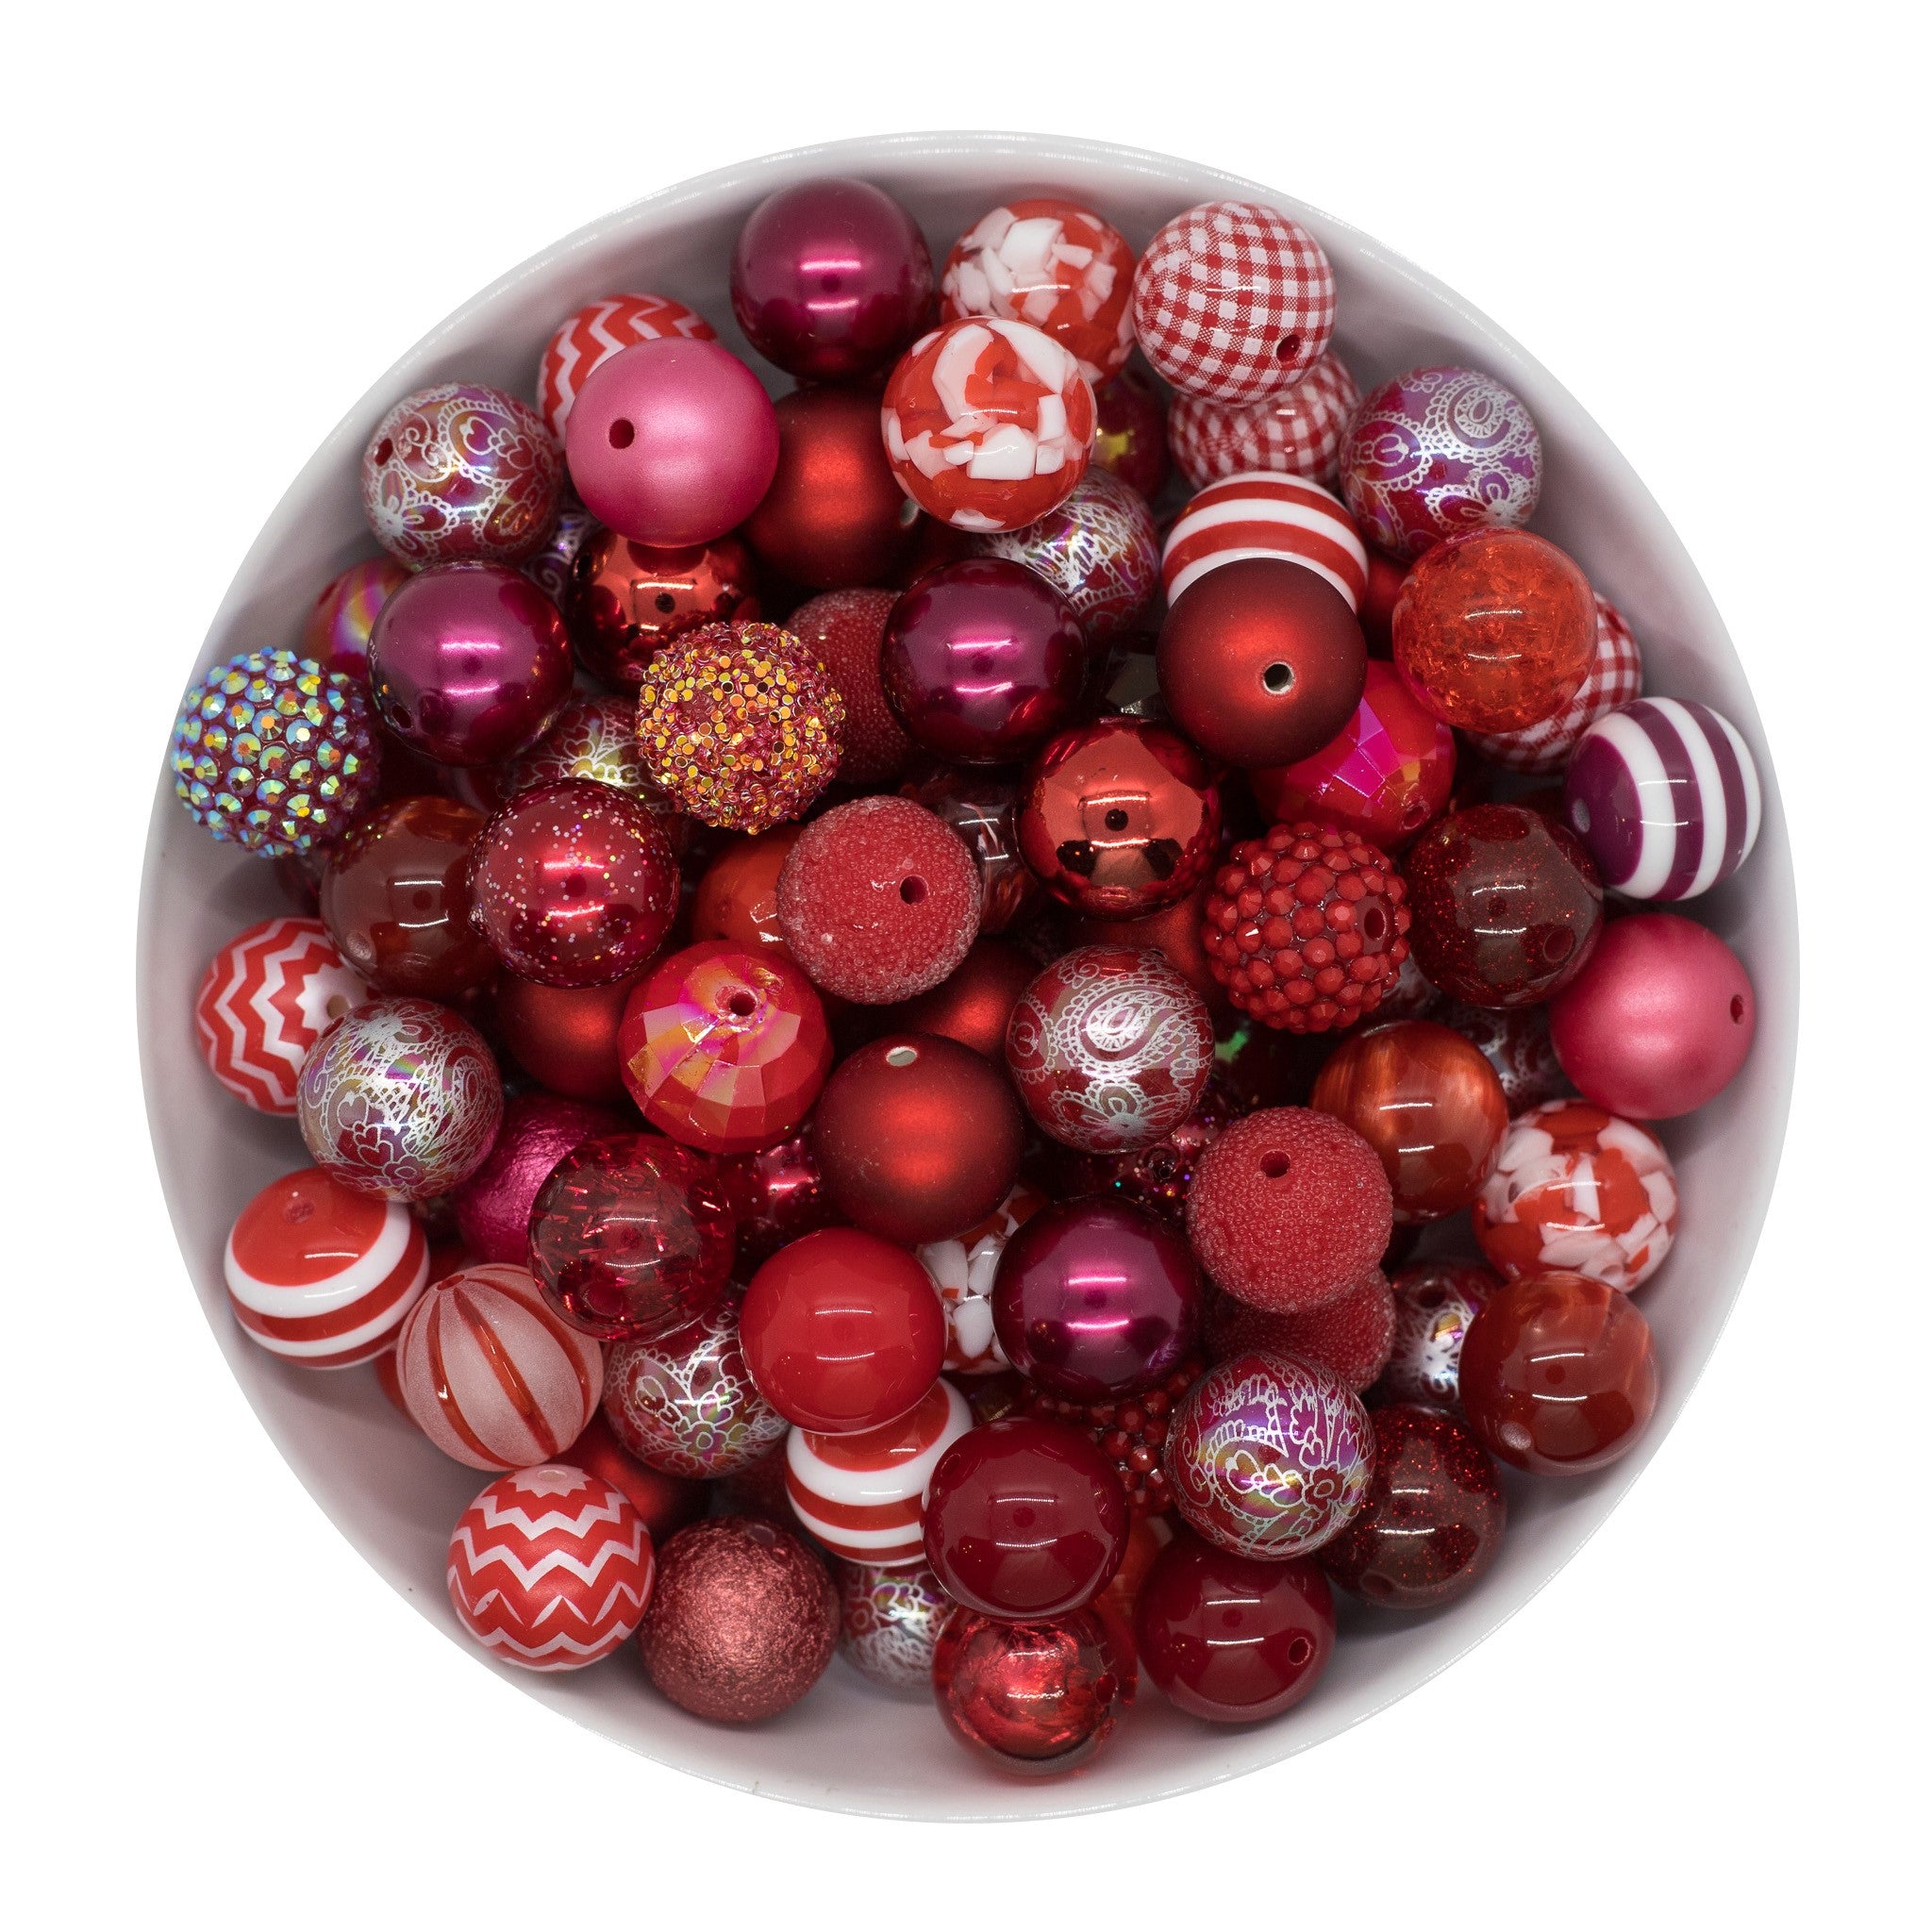 50 Qty 20mm Beads - Pastel Mixed Beads, Bubblegum Beads - Acrylic Beads -  #34